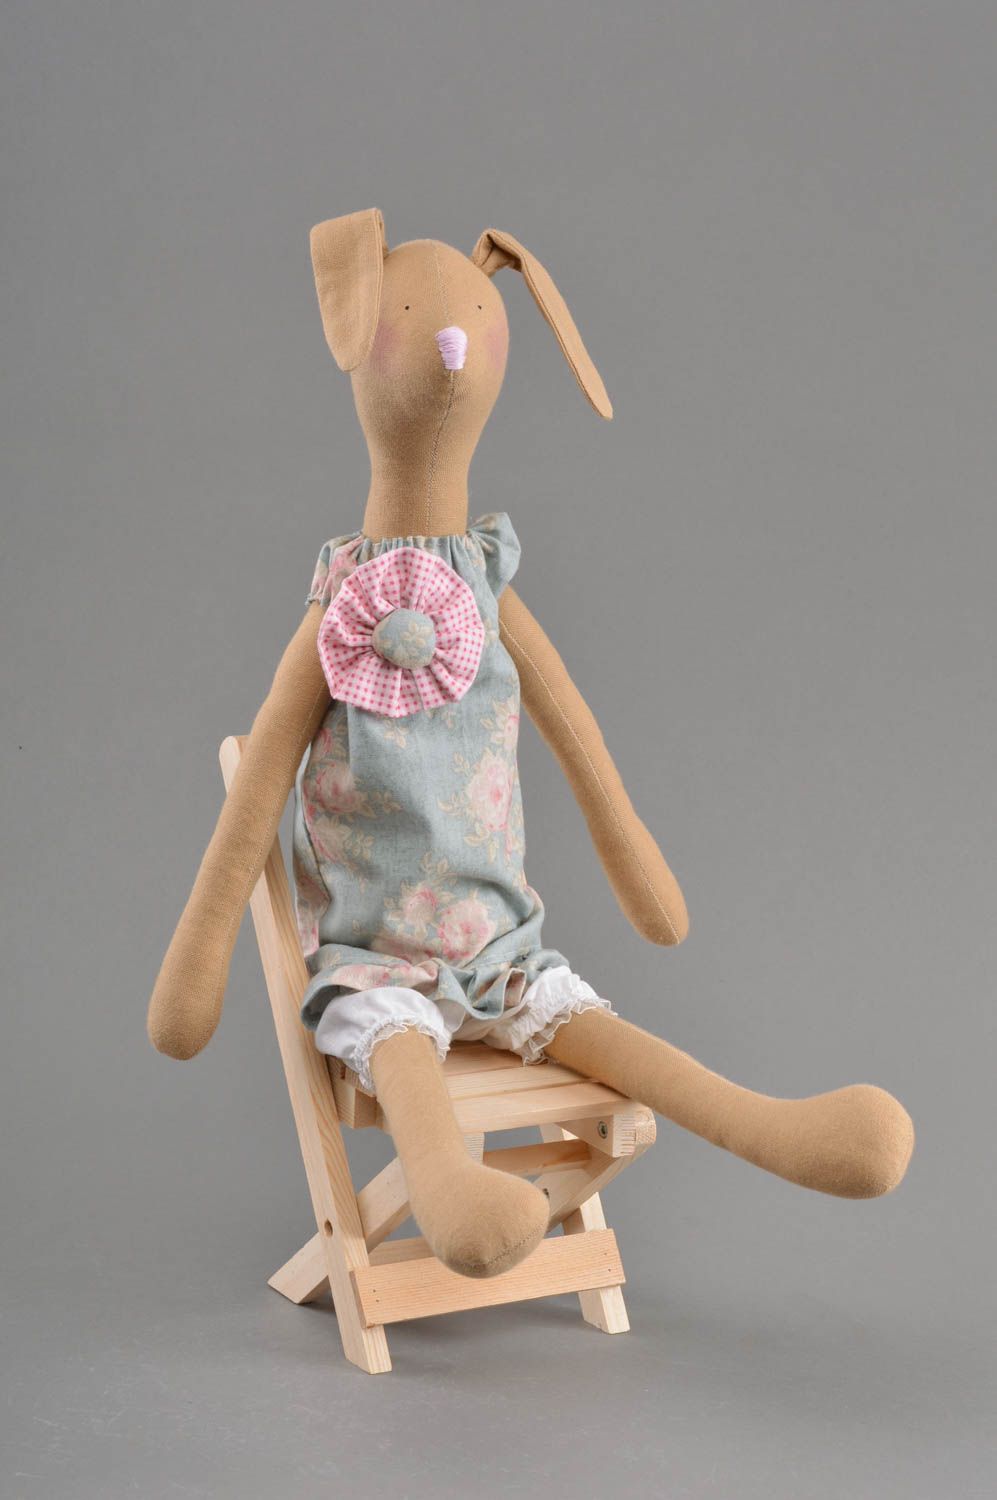 Textil Kuscheltier Hase im Kleid weich schön handmade Spielzeug für Kinder foto 1